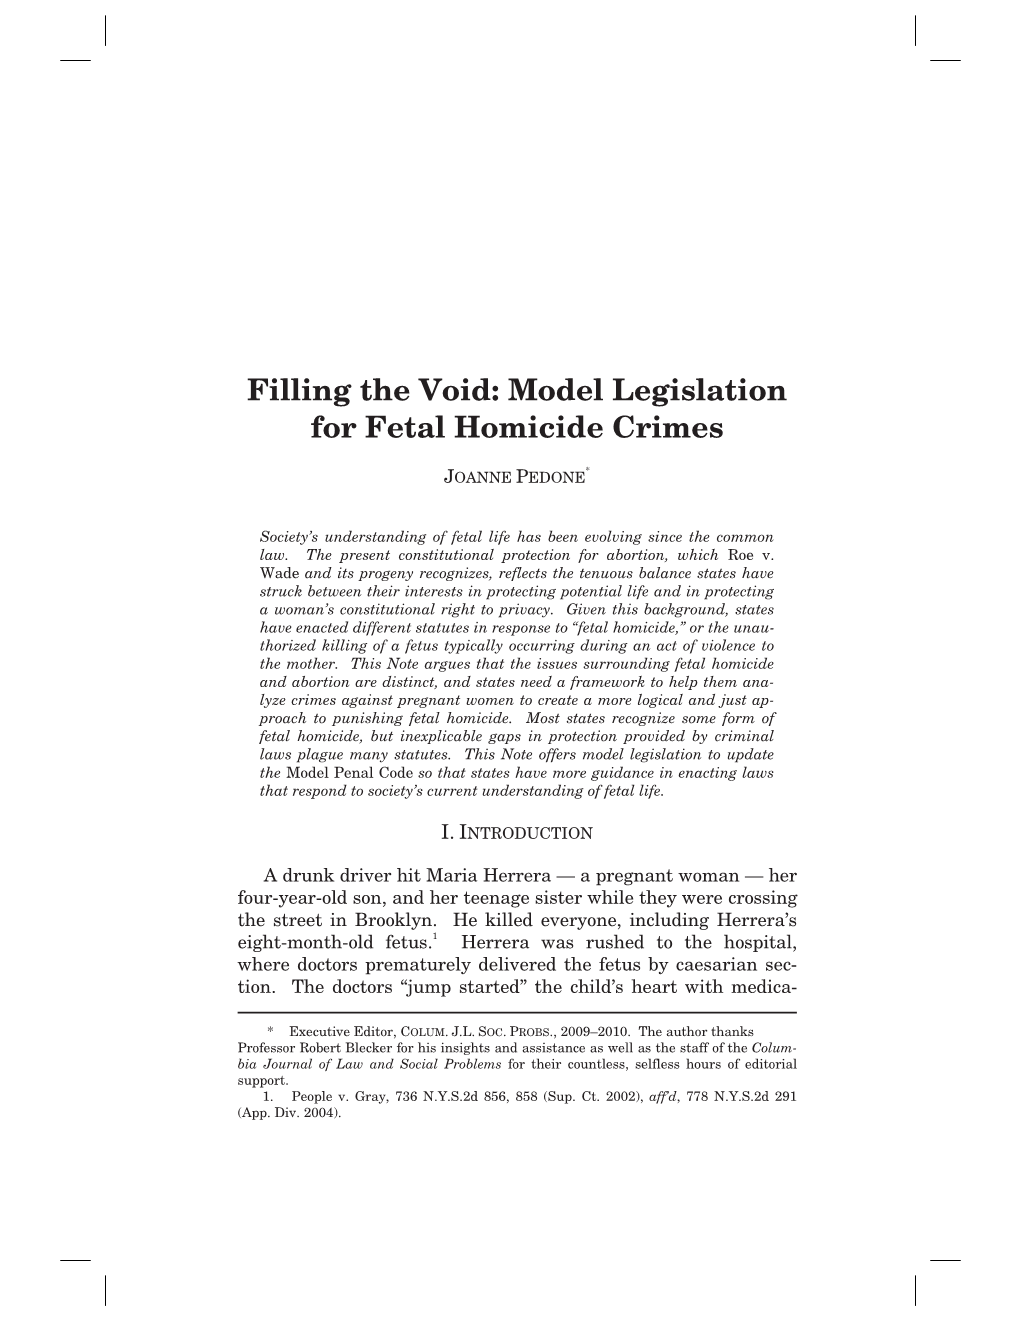 Filling the Void: Model Legislation for Fetal Homicide Crimes